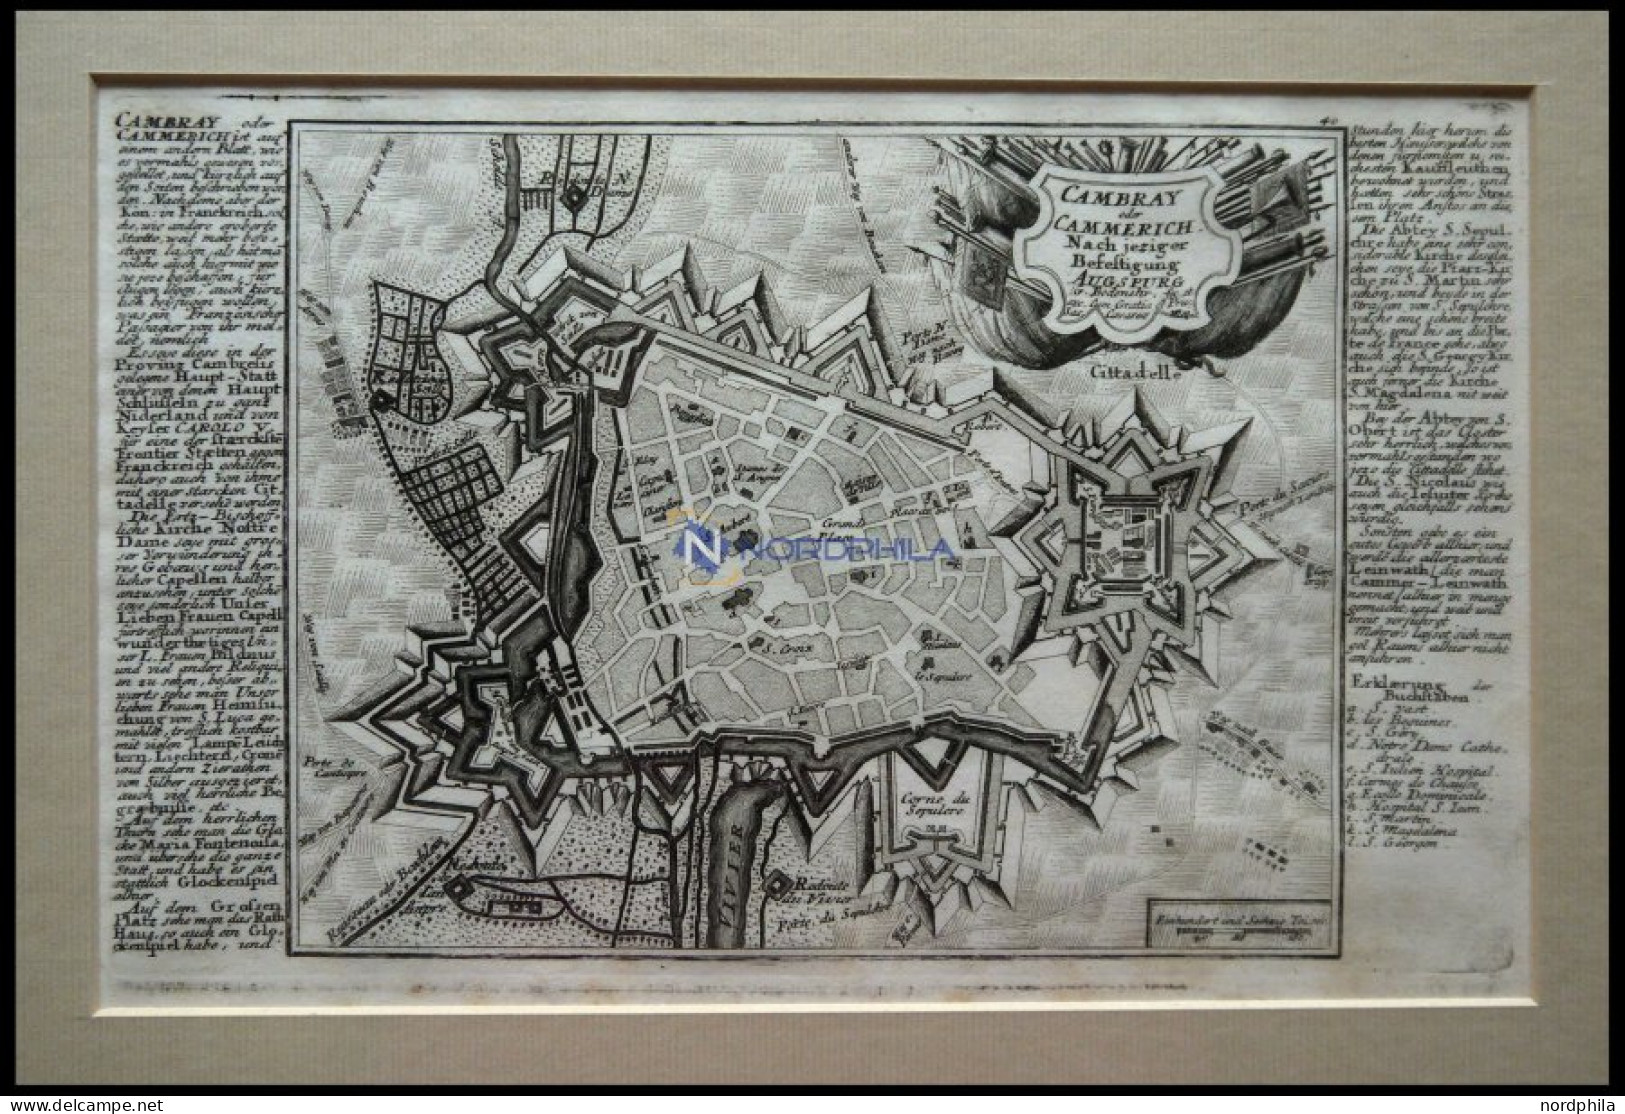 CAMBRAY, Gesamtansicht Aus Der Vogelschau, Kupferstich-Plan Von Bodenehr Um 1720 - Litografia